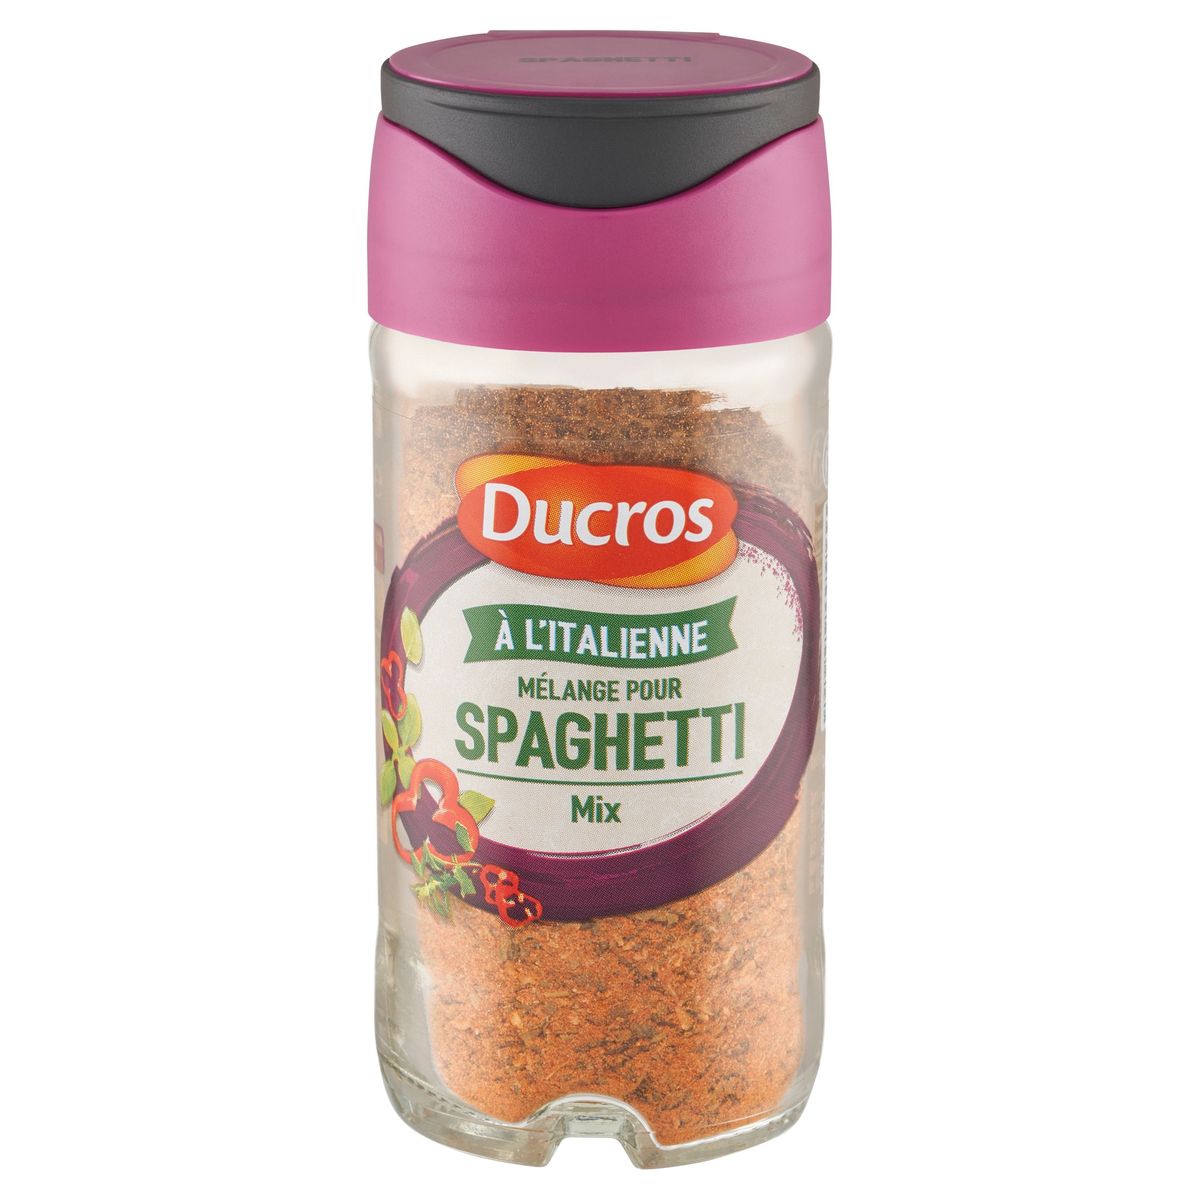 Ducros Mélange pour Spaghetti 32 g